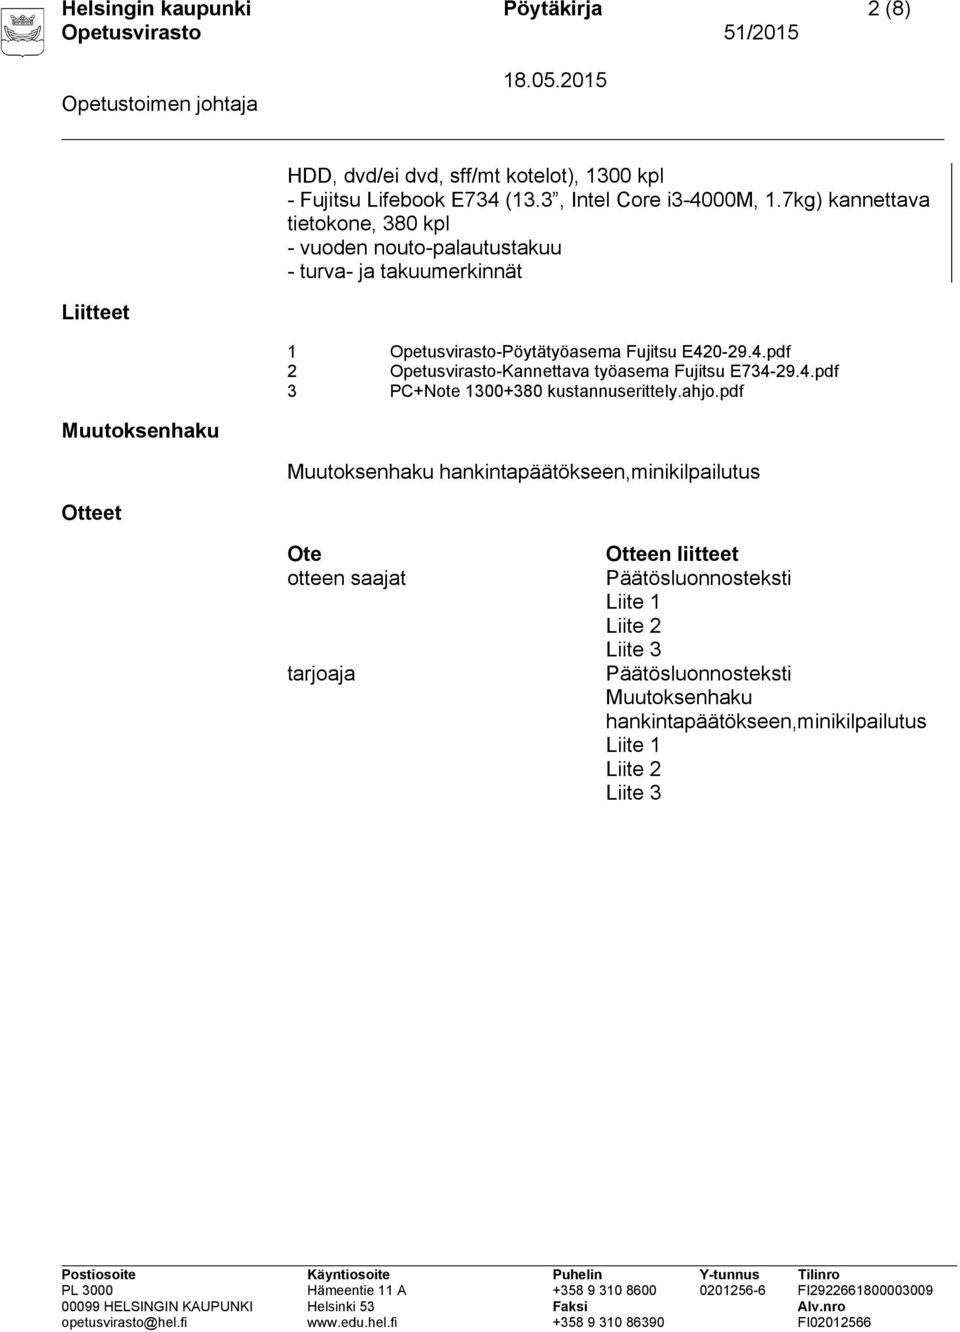 0-29.4.pdf 2 Opetusvirasto-Kannettava työasema Fujitsu E734-29.4.pdf 3 PC+Note 1300+380 kustannuserittely.ahjo.